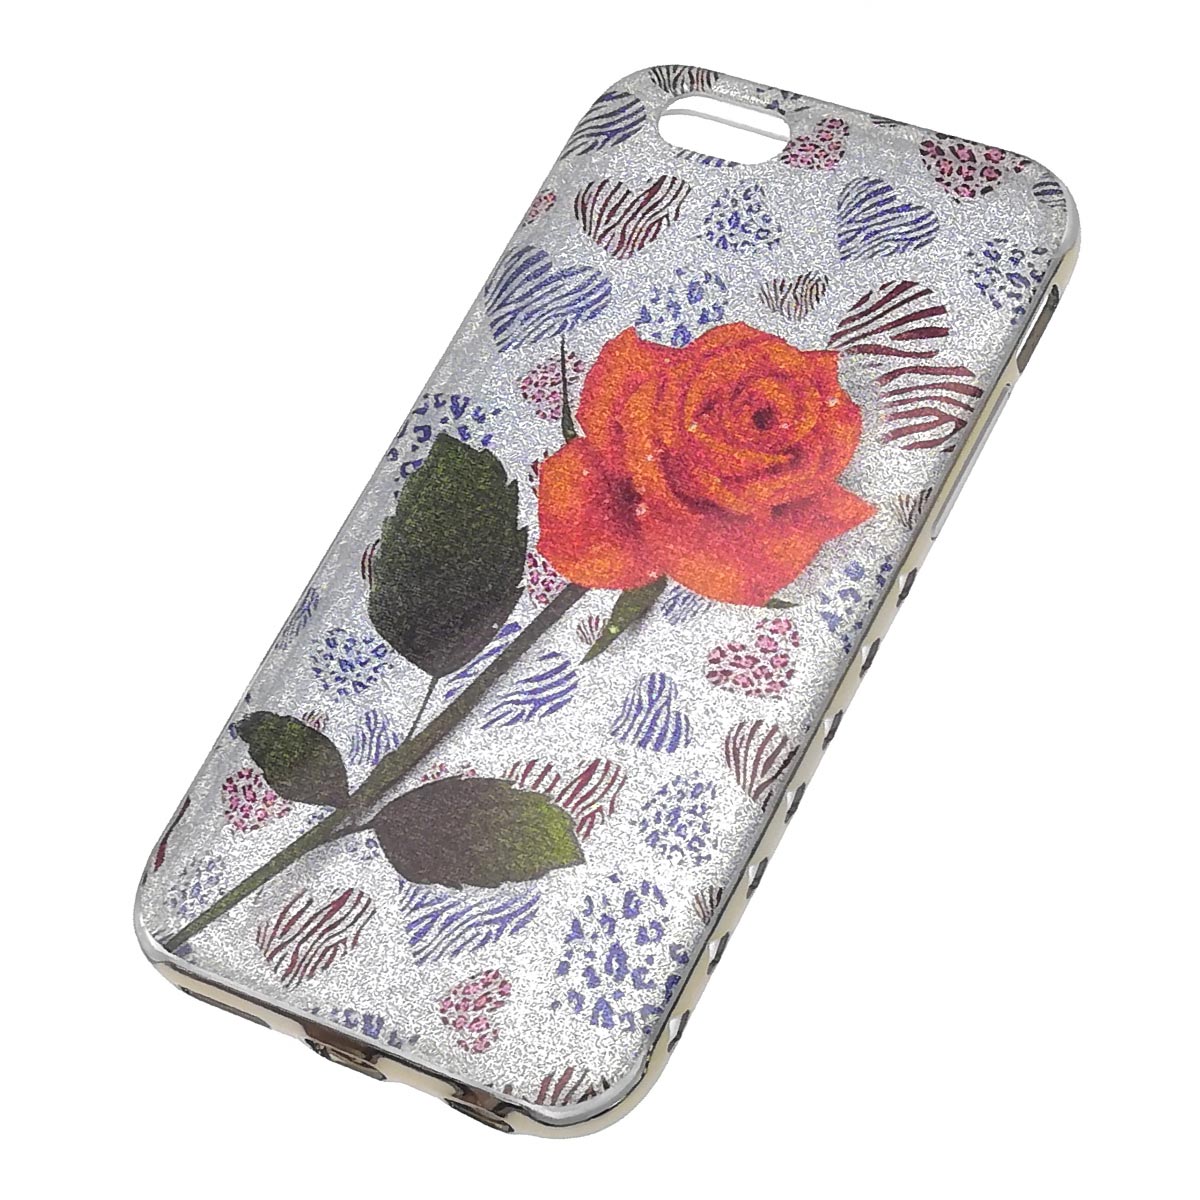 Чехол накладка для APPLE iPhone 6, iPhone 6G, iPhone 6S, силикон, блестки, рисунок золотистая роза.